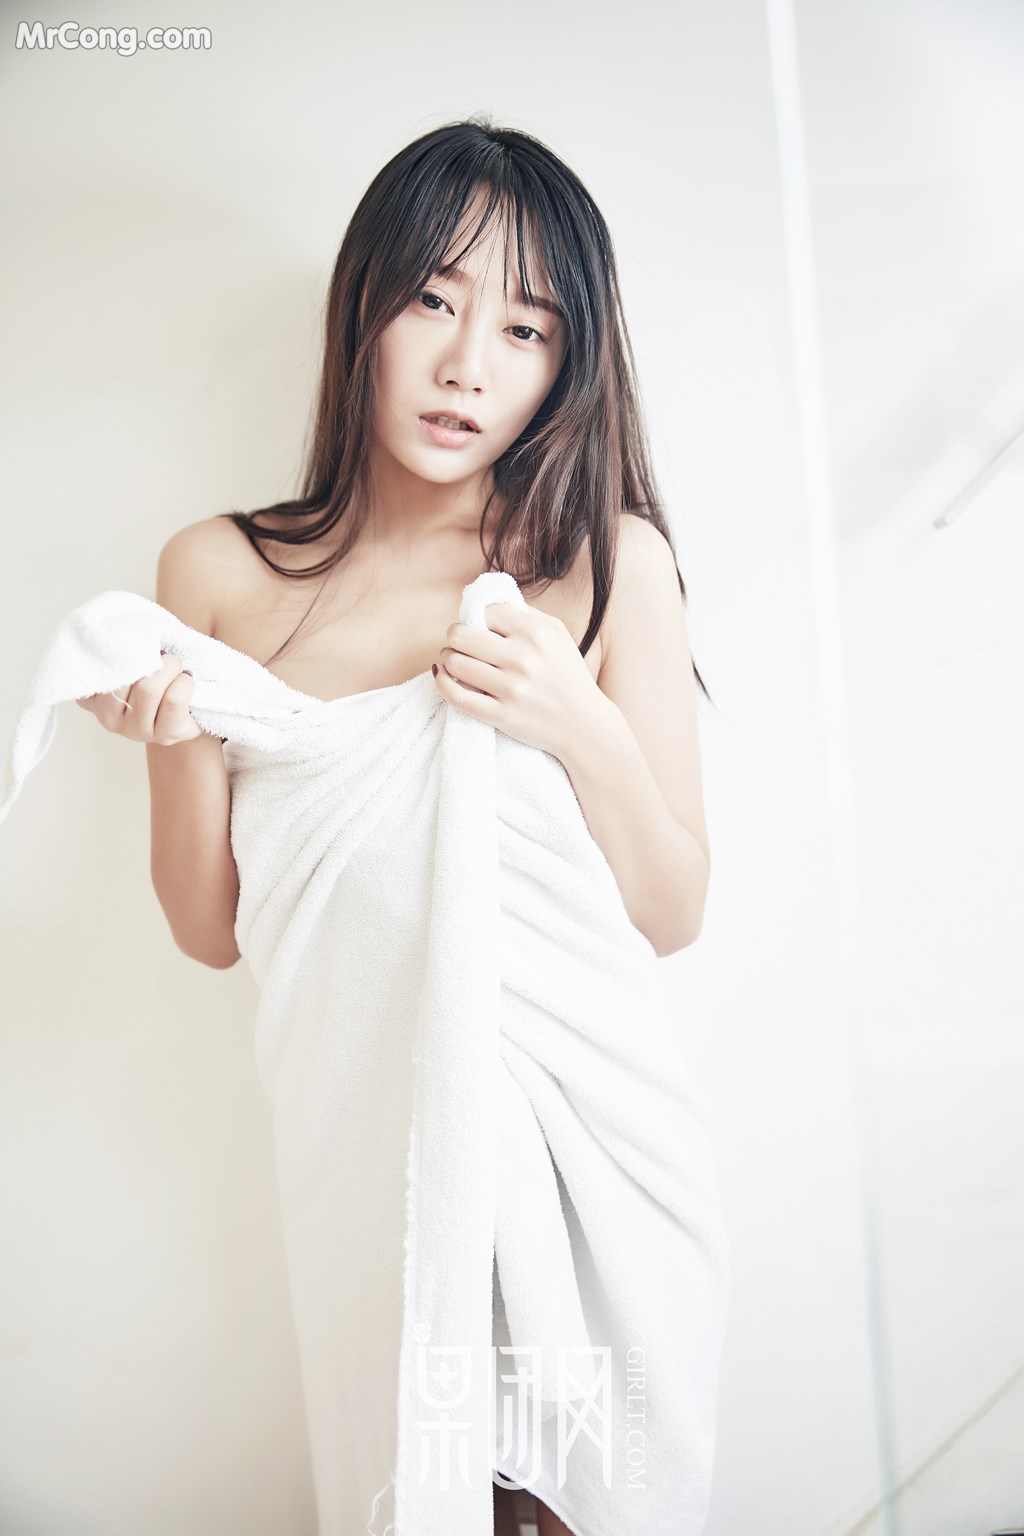 GIRLT No.122: Model He Jia Ying (何嘉颖) (59 photos) photo 2-0